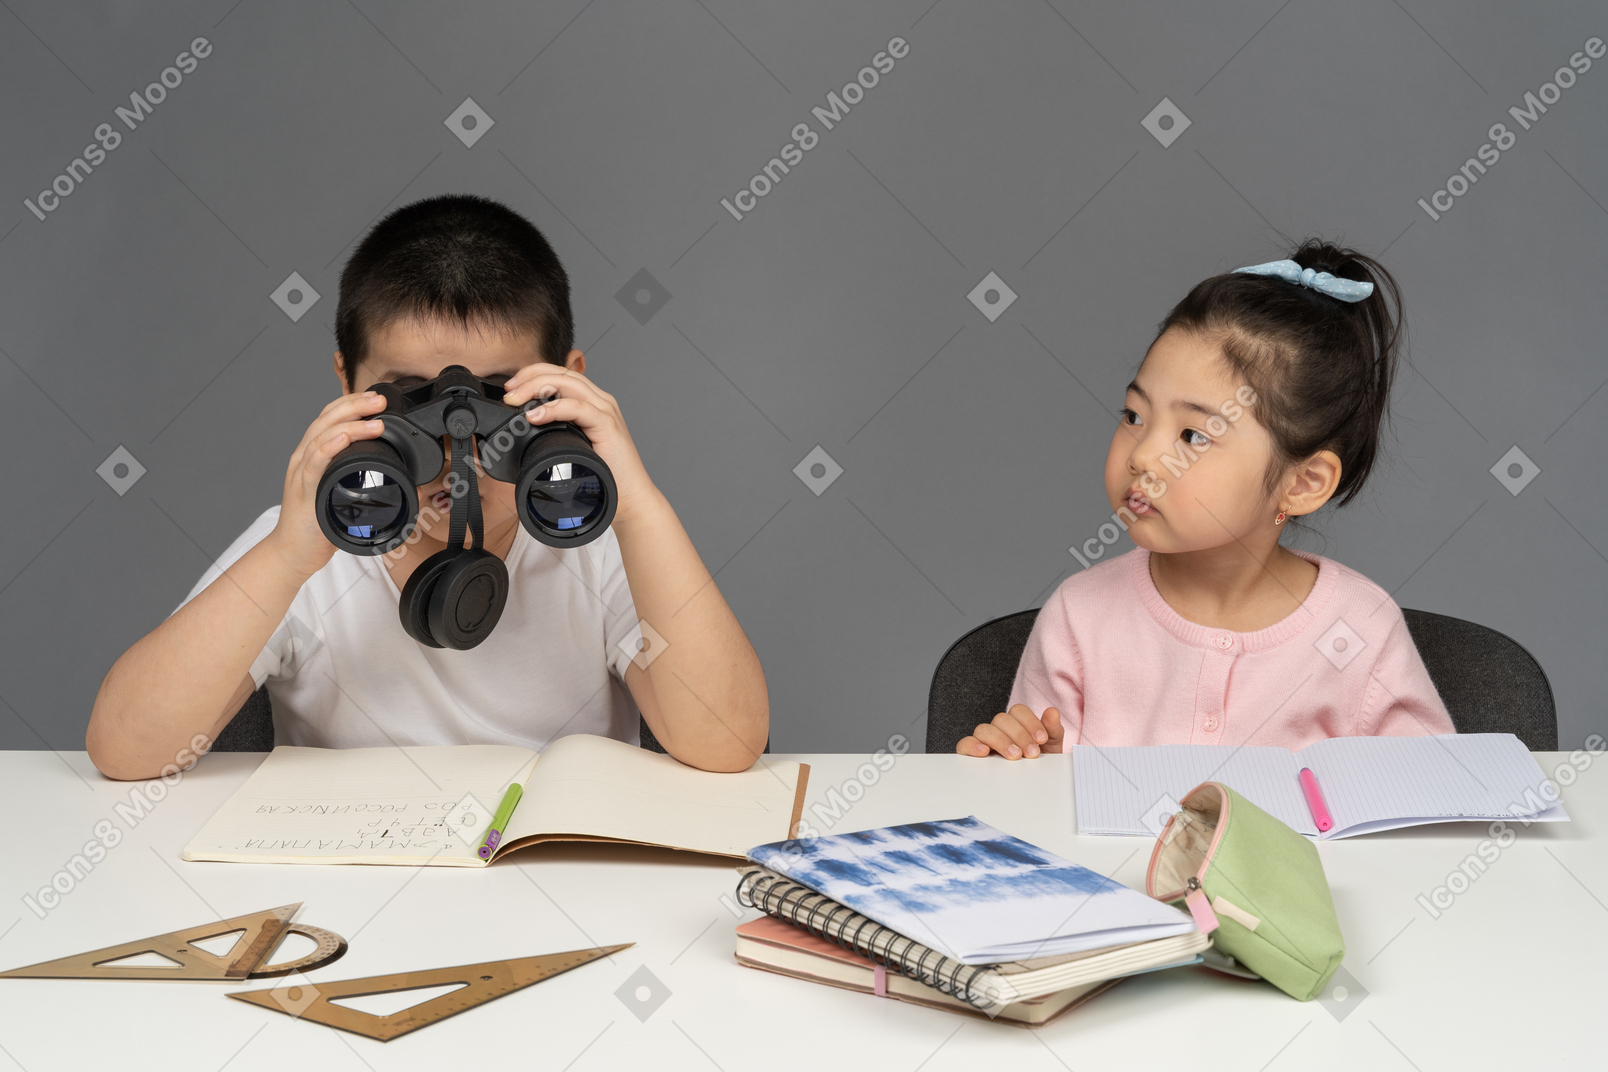 Menino olhando através de binóculos ao lado de menina